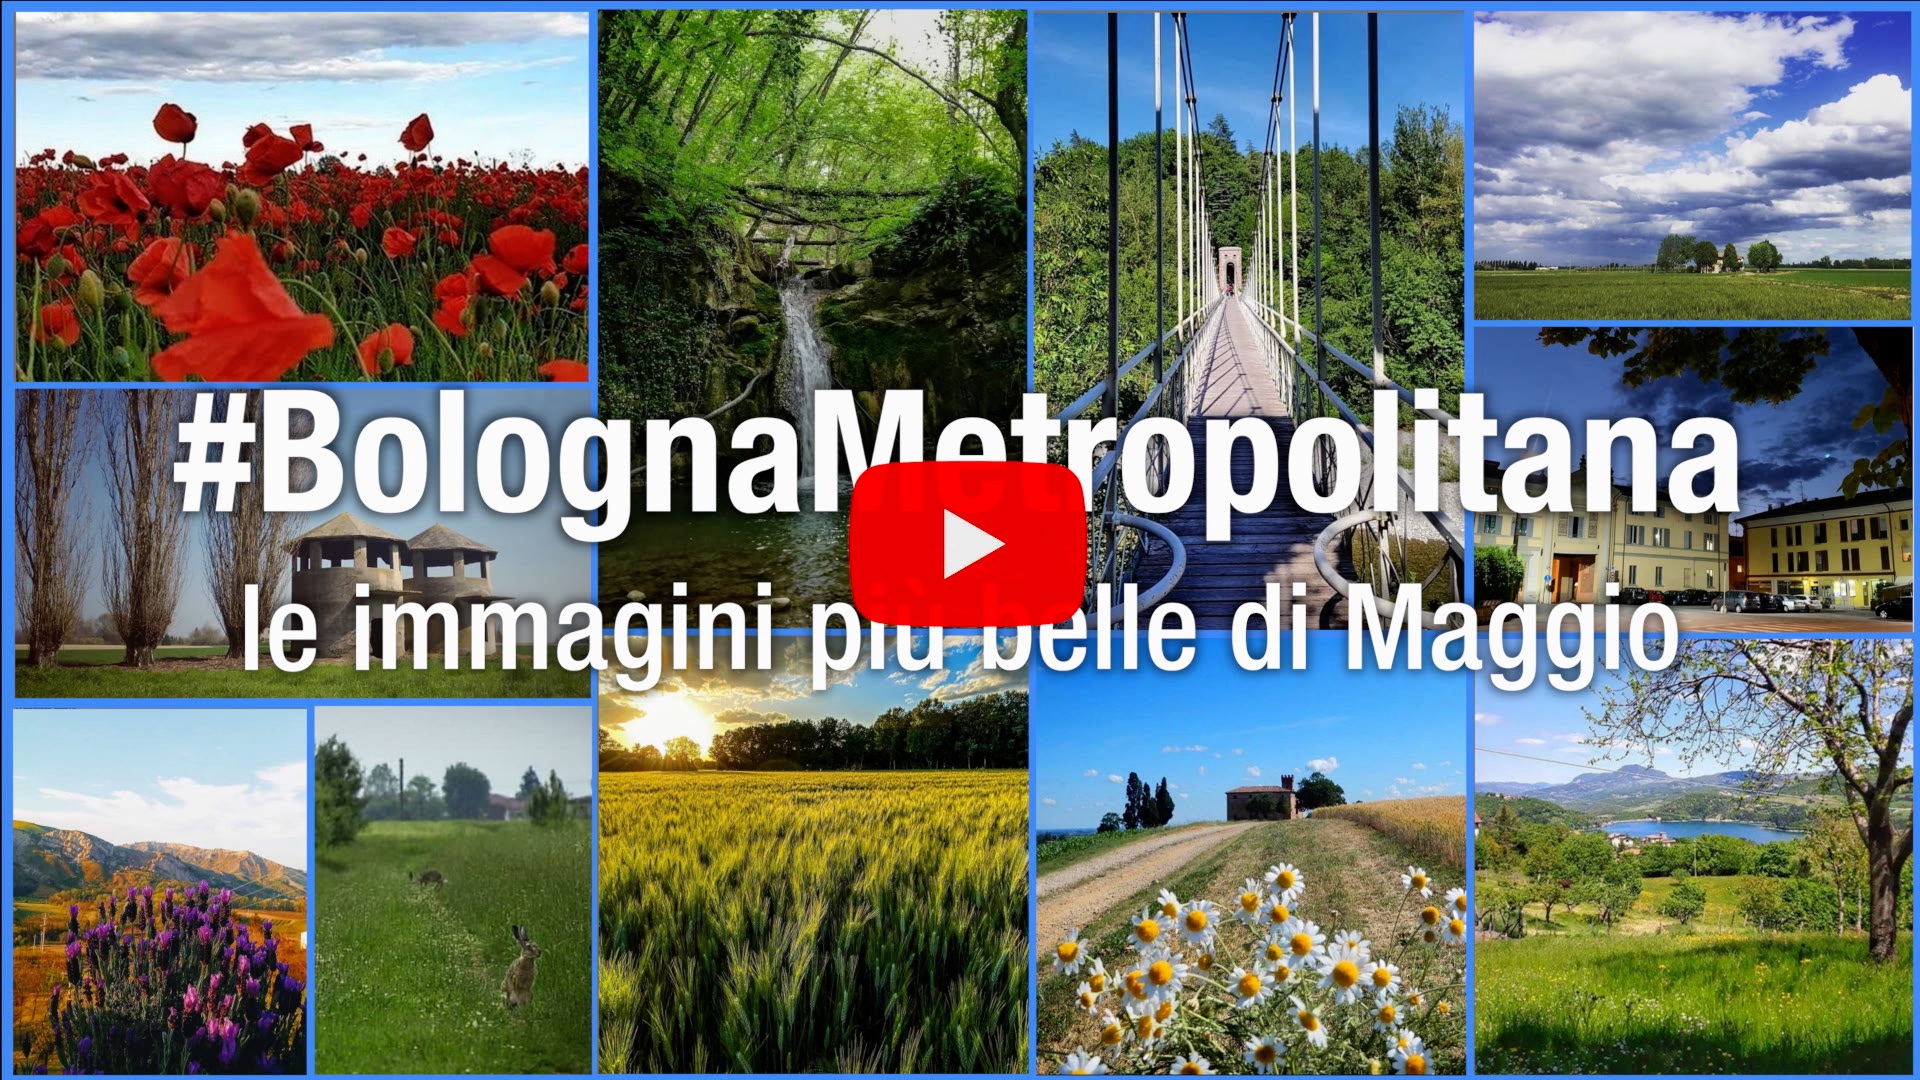 #BolognaMetropolitana - Le immagini più belle di maggio 2020